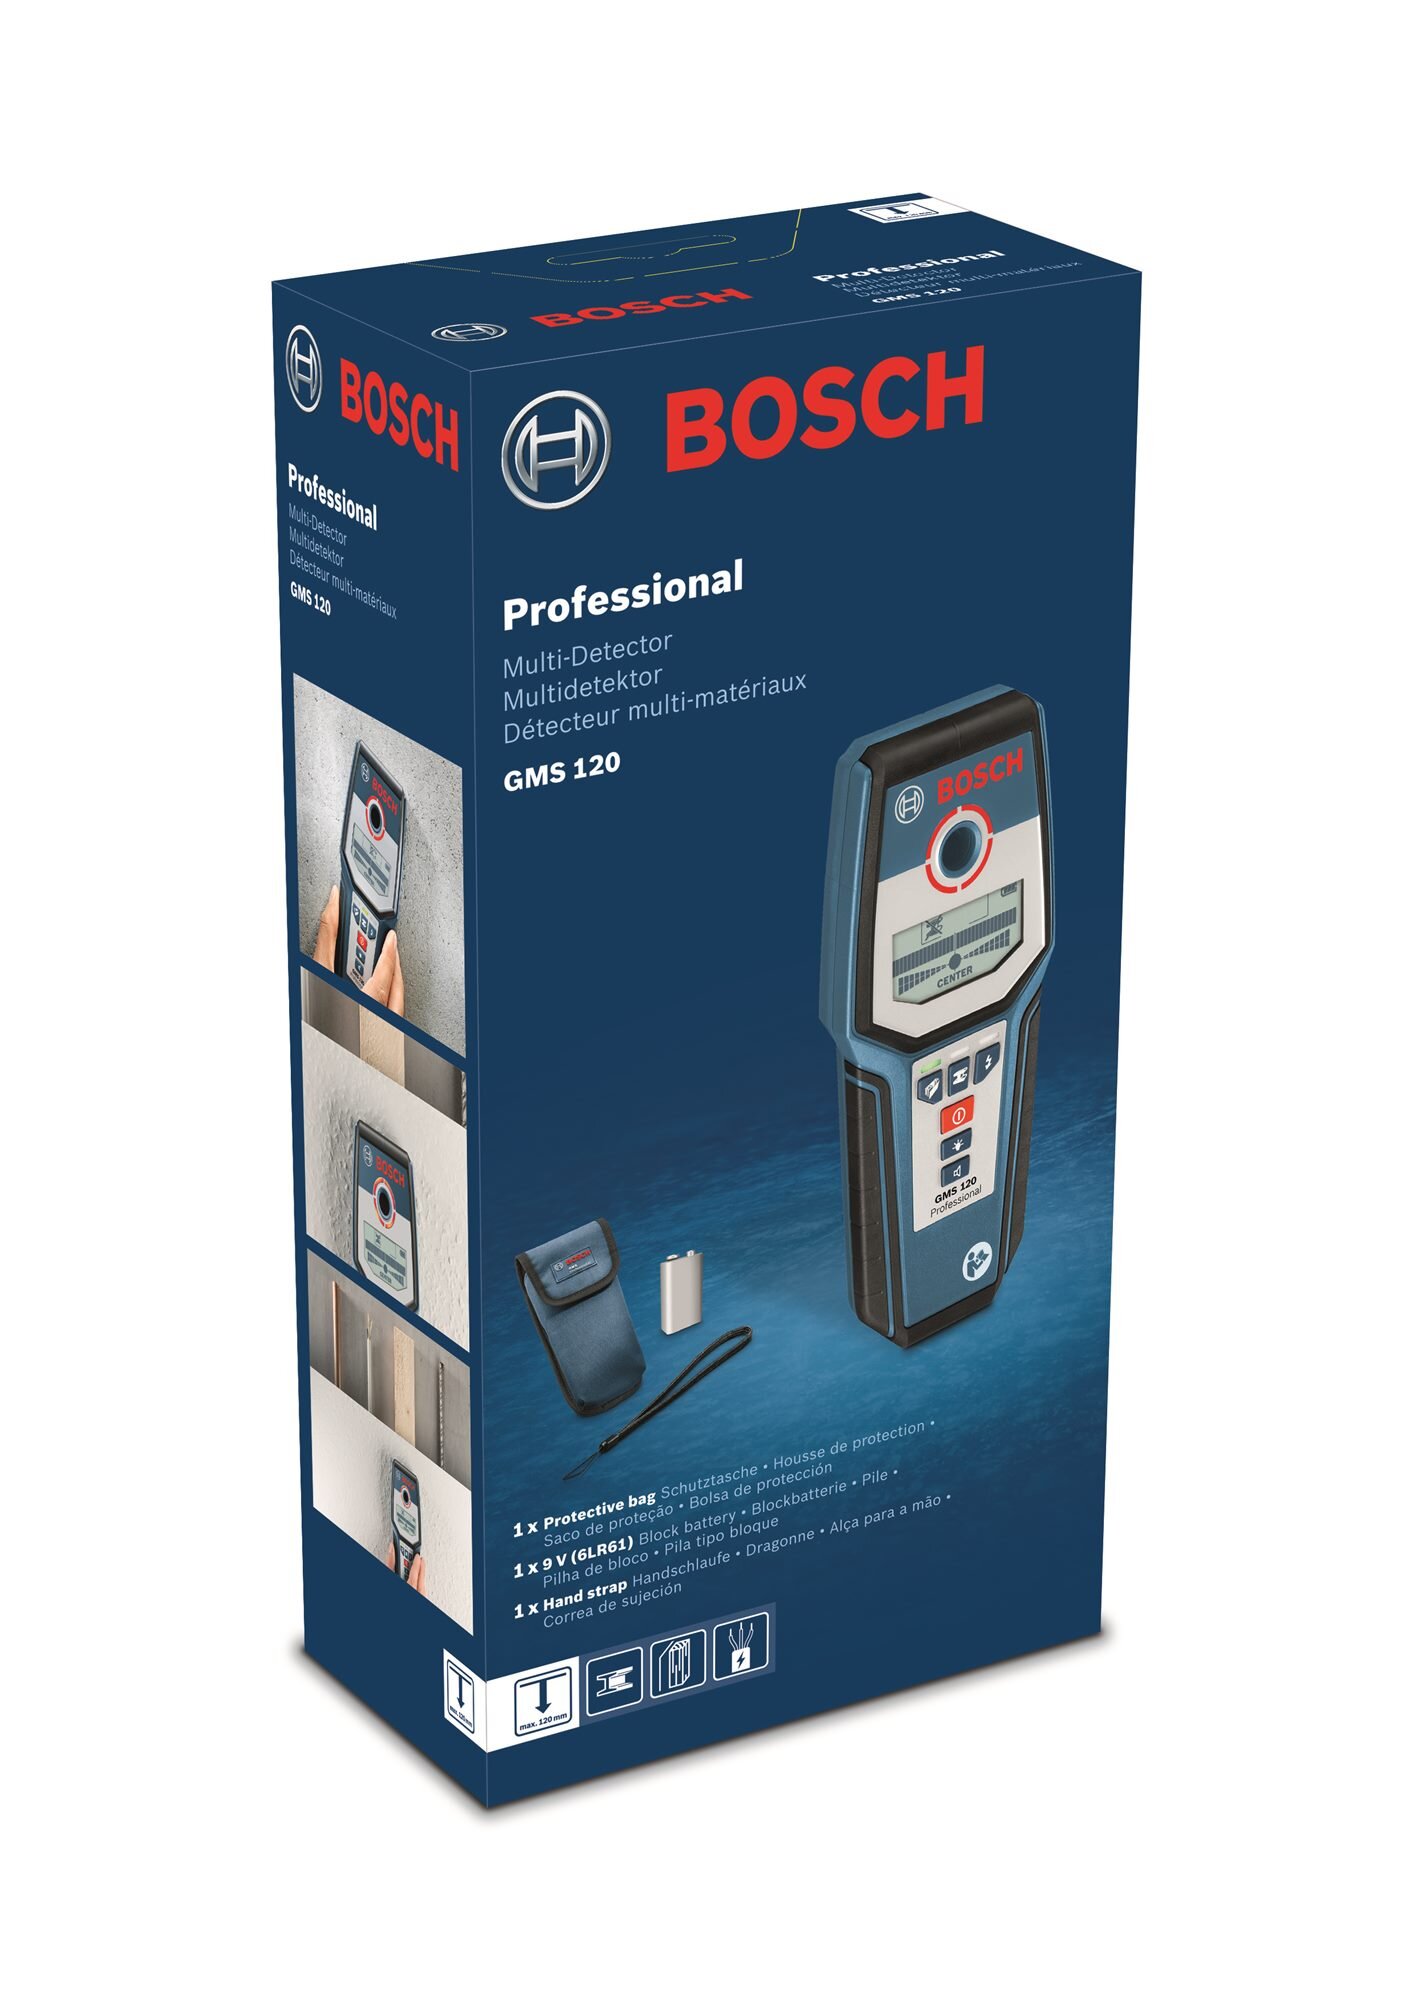 Detektor BOSCH Professional GMS 120 0601081000 - niskie ceny i